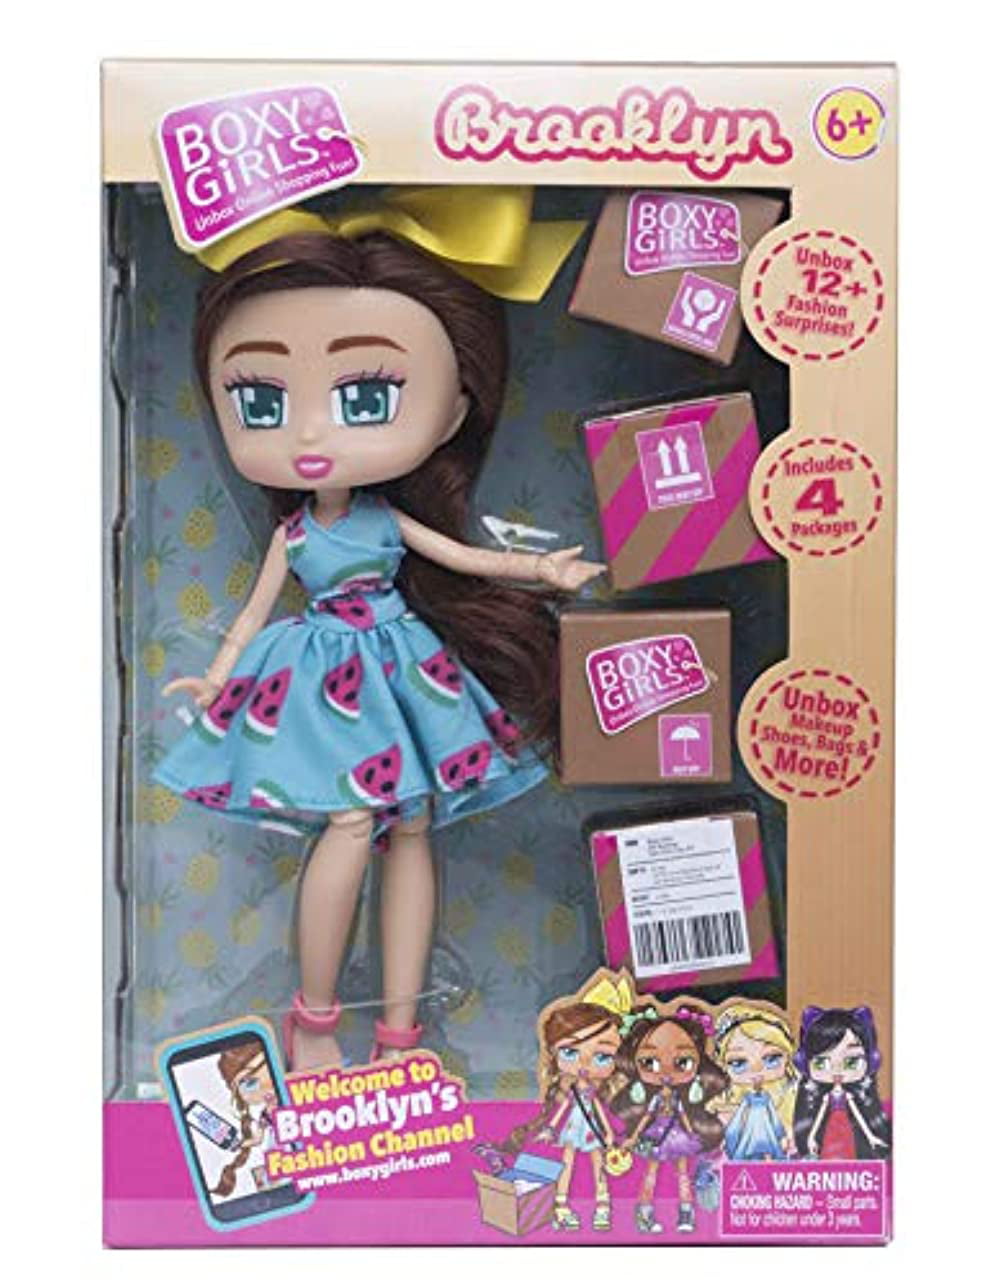 Boxy Girls Peek-A-Box Mini Doll [Pink] 